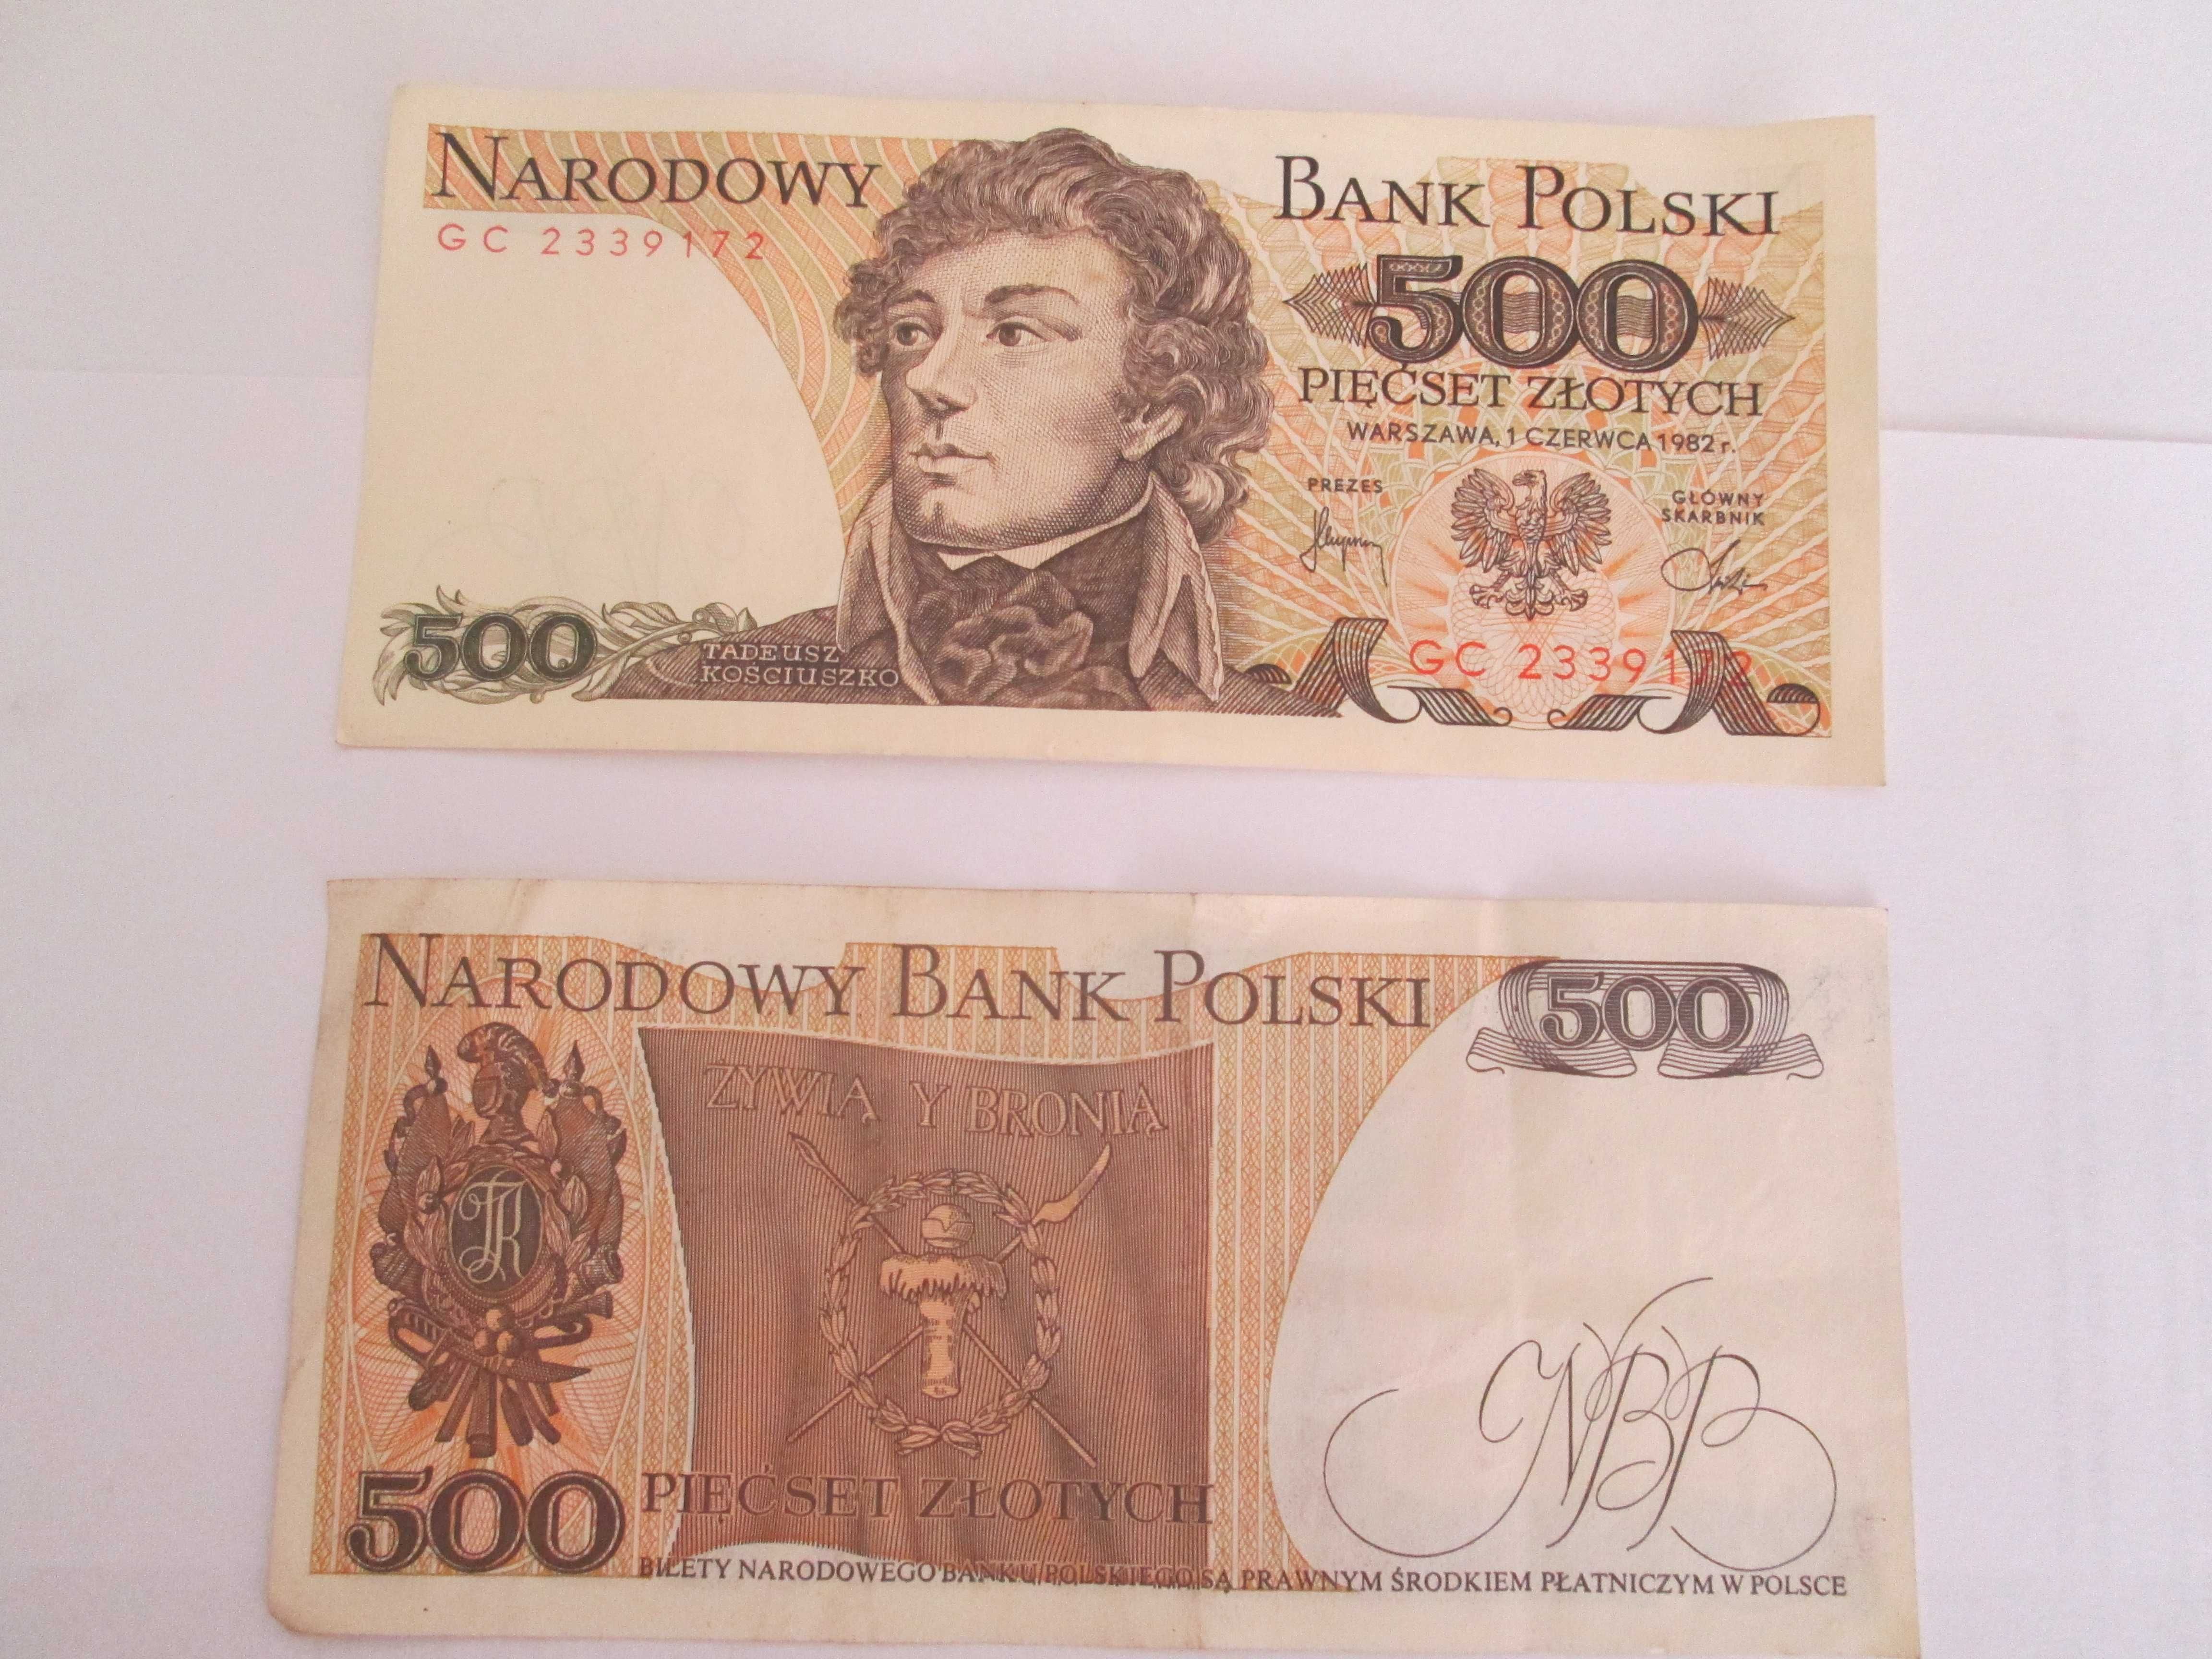 Sprzedam banknoty z PRL-u, o nominale 500 zł. z 1982 r.